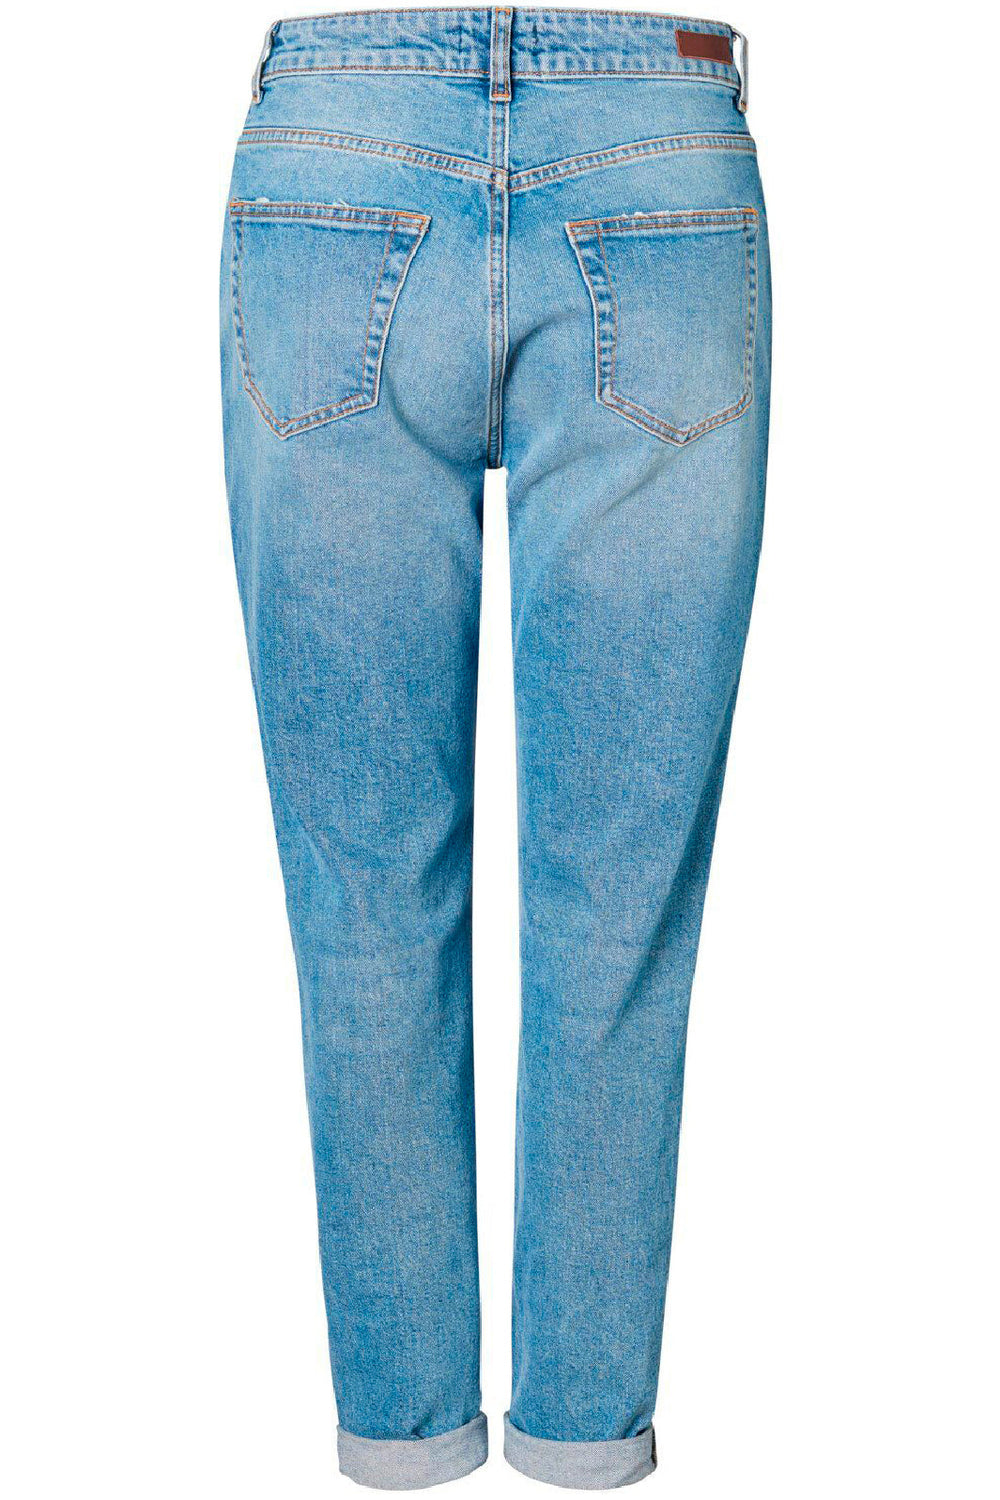 Pieces - Leah Mom Ankel - Light Blue Denim Jeans 